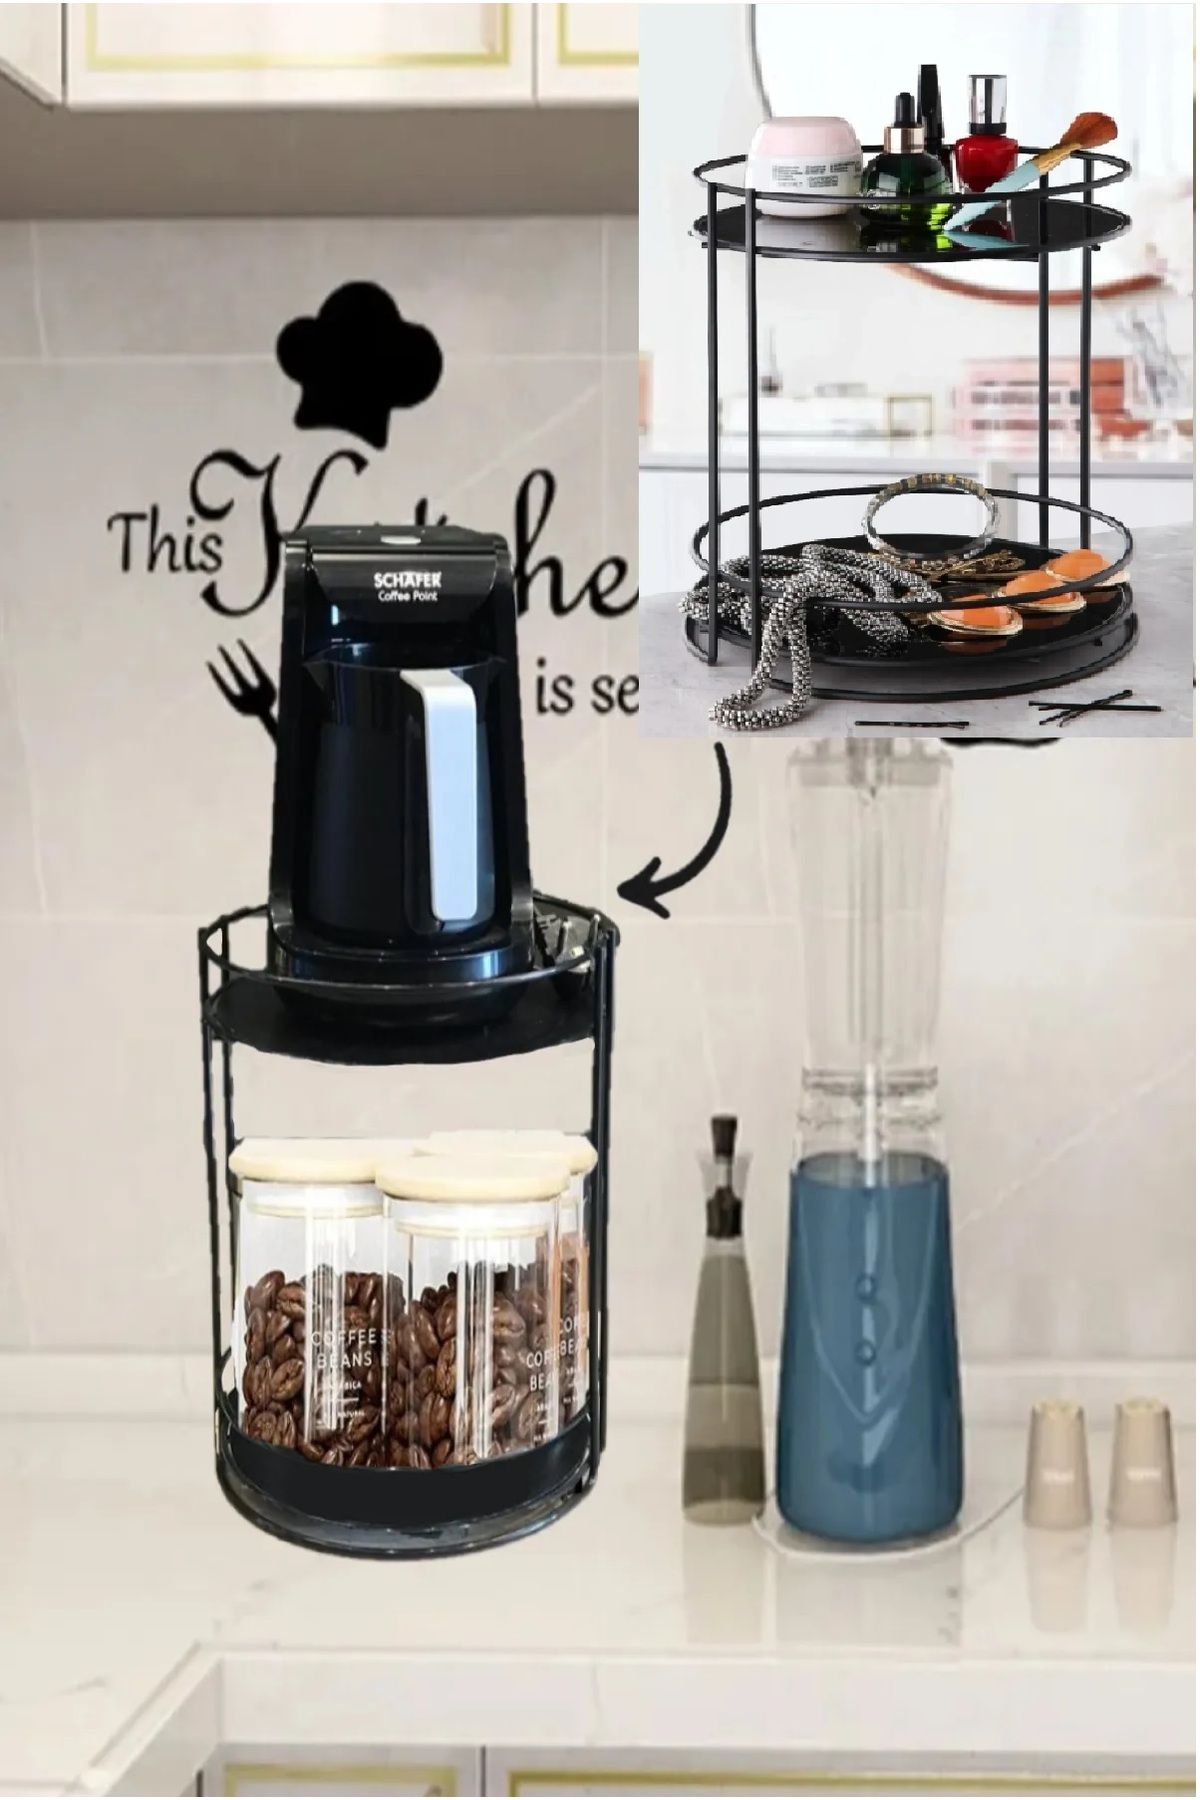 Bayev Yuvarlak 2 Katlı Metal Tezgah Üstü Stand Mutfak Düzenleyici Kahve Ve Çay Makinası Rafı